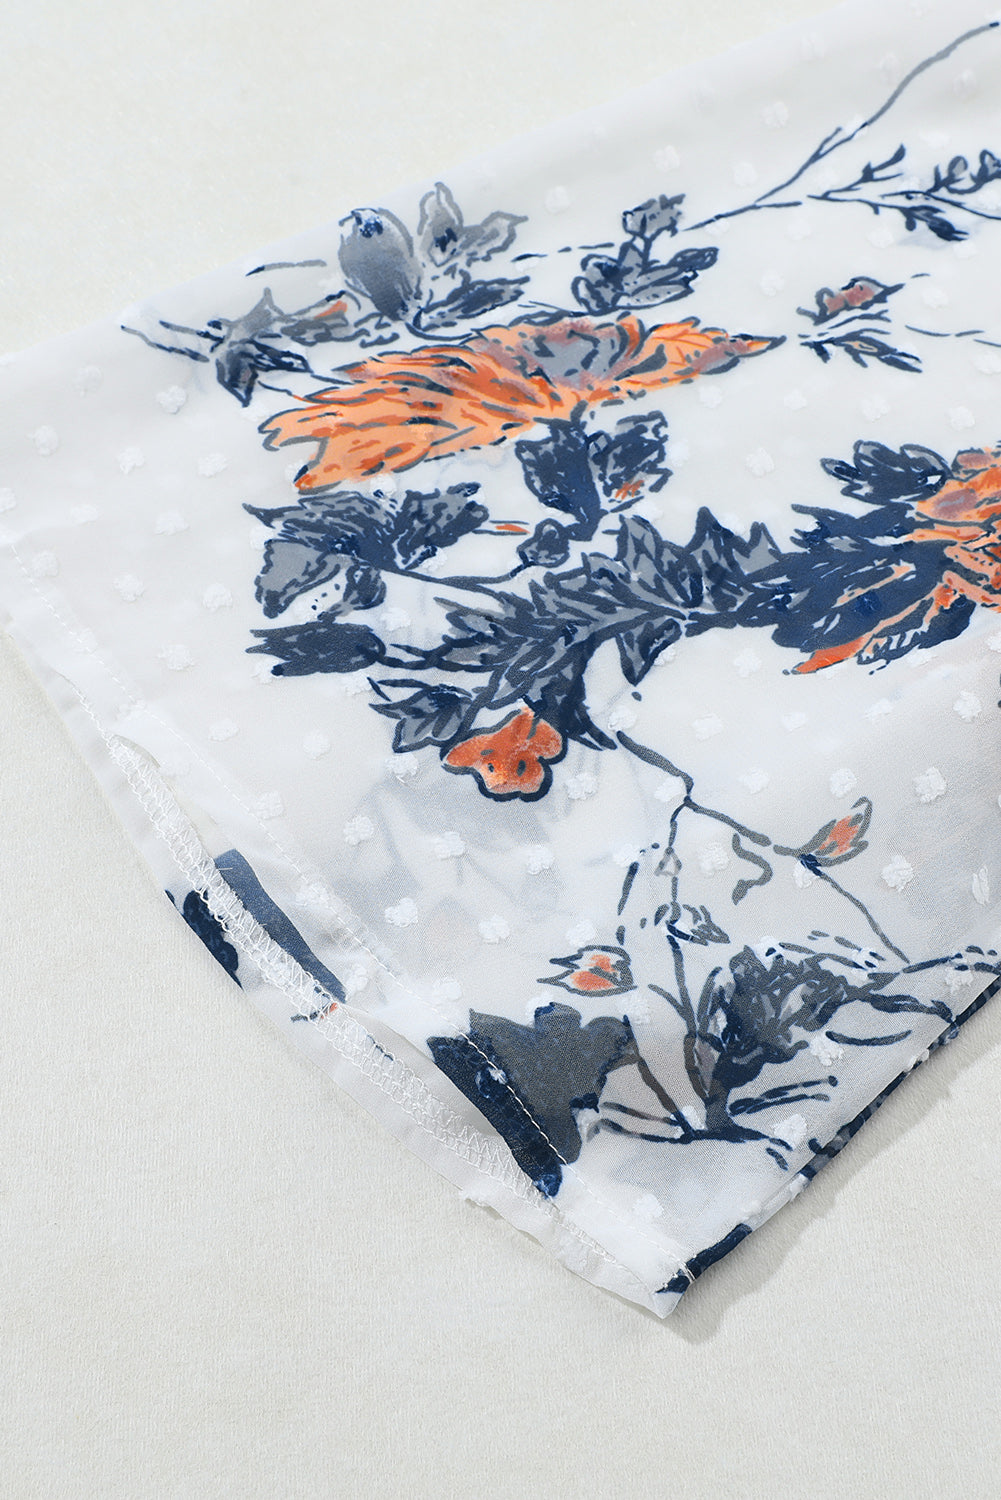 Kimono blanc à manches cloche et imprimé floral ouvert sur le devant